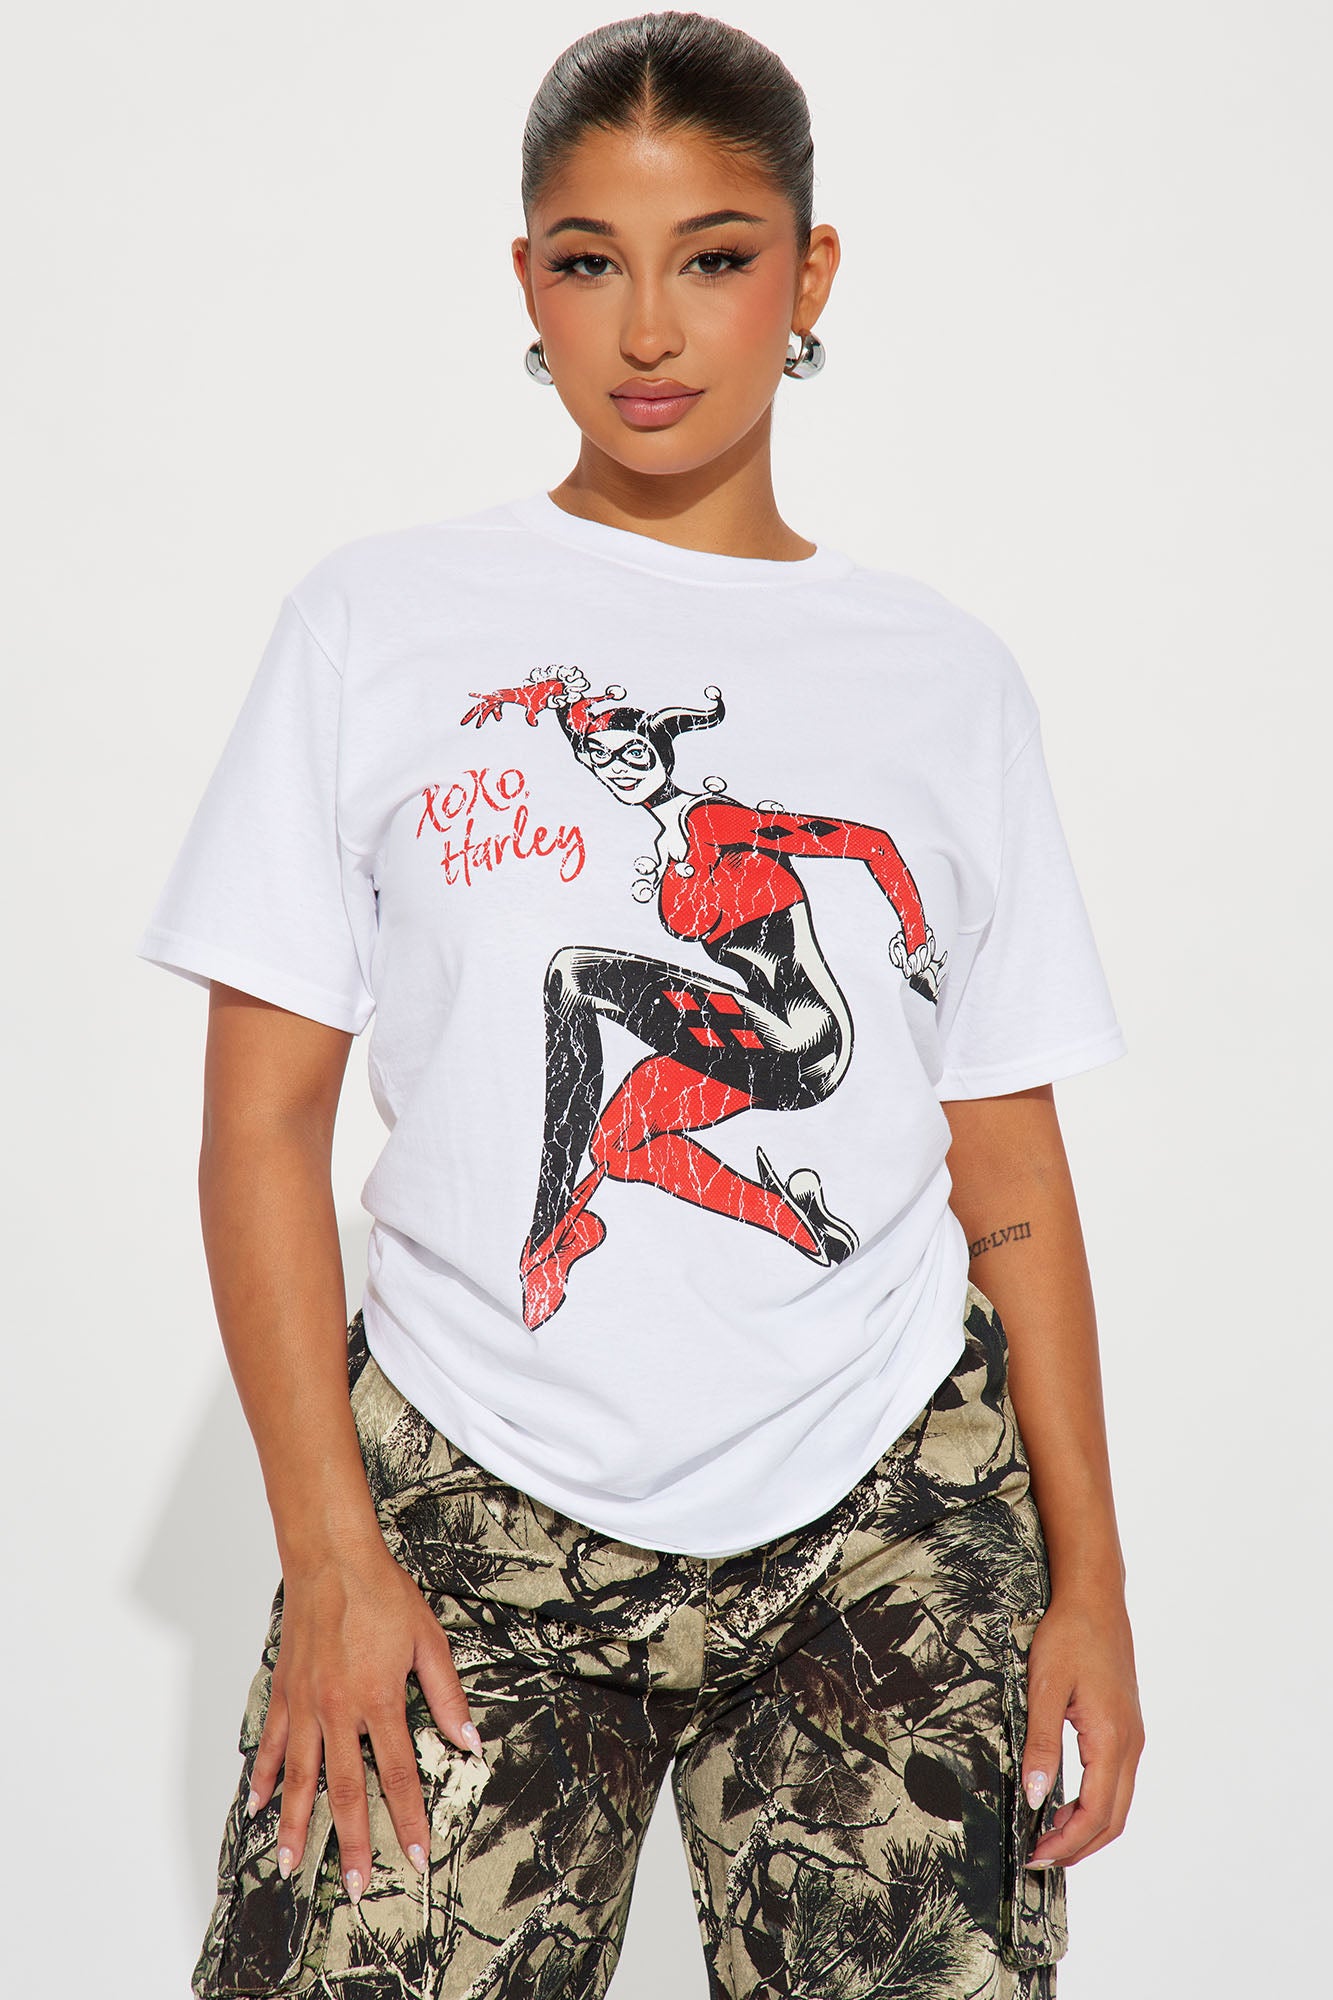 stussy lv monogram, Men's Fashion, Tops & Sets, Tshirts & Polo Shirts on  Carousell